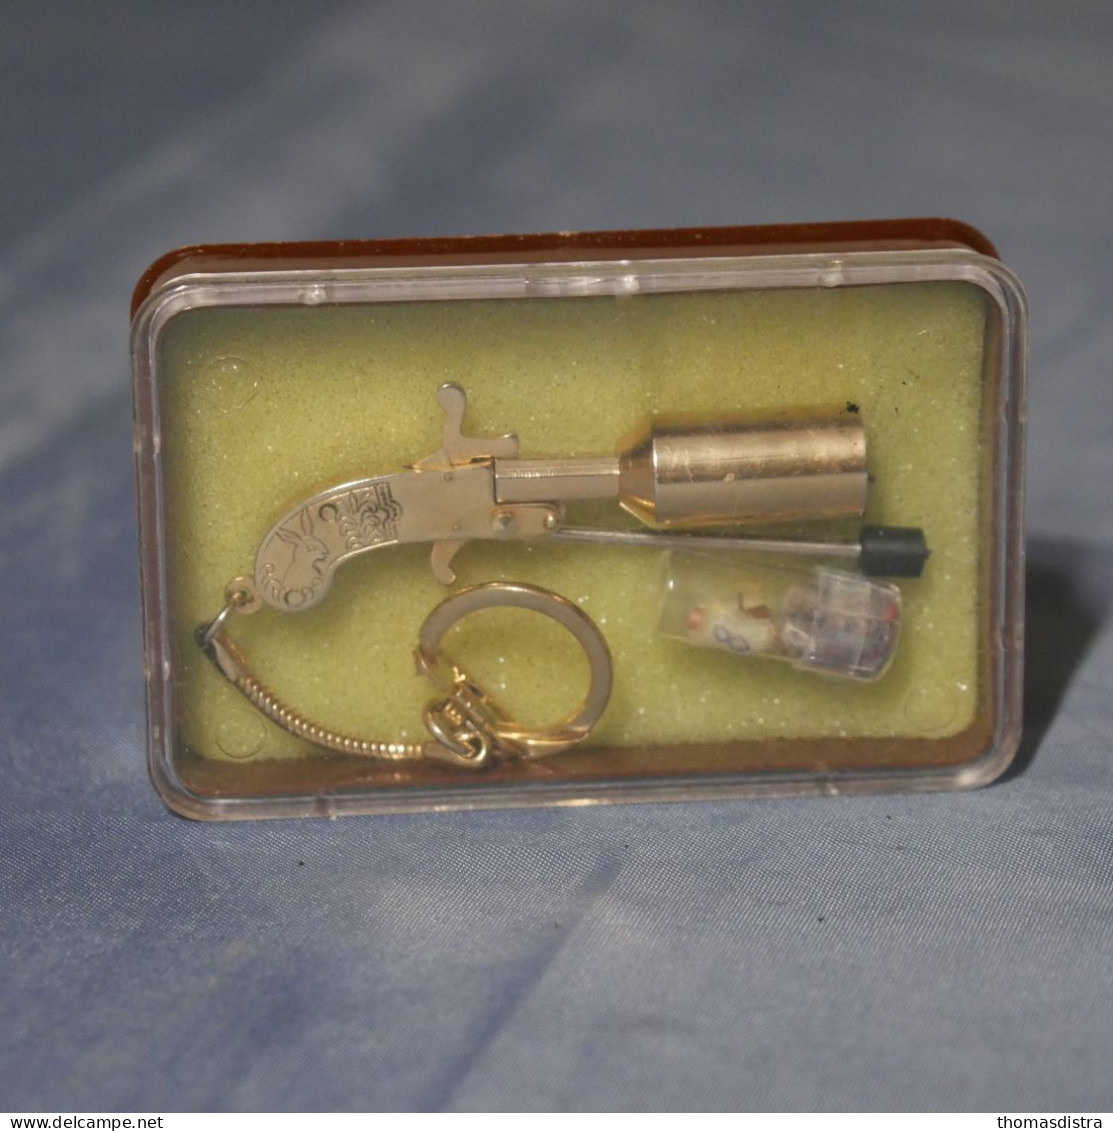 Berloque le plus petit pistolet à blanc du monde serti d'or années 70 80 vintage